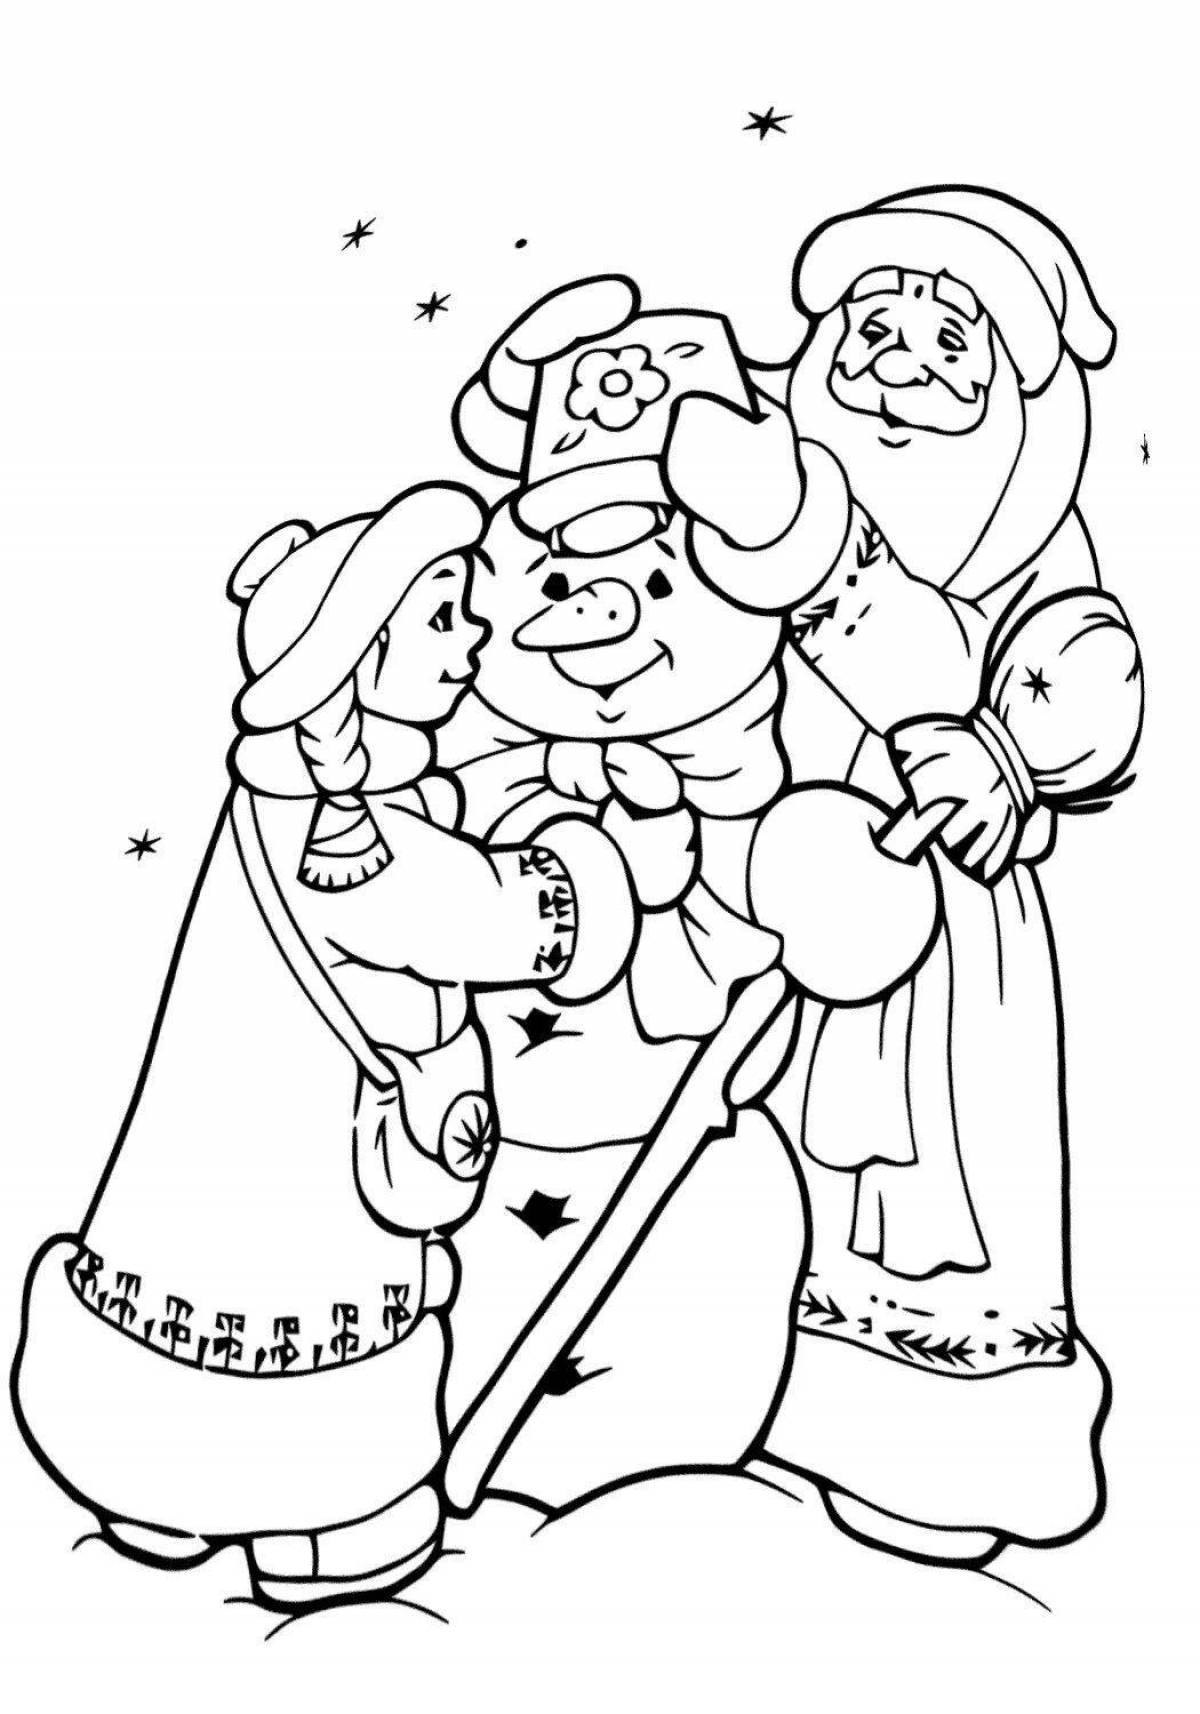 Santa Claus and snowman #2